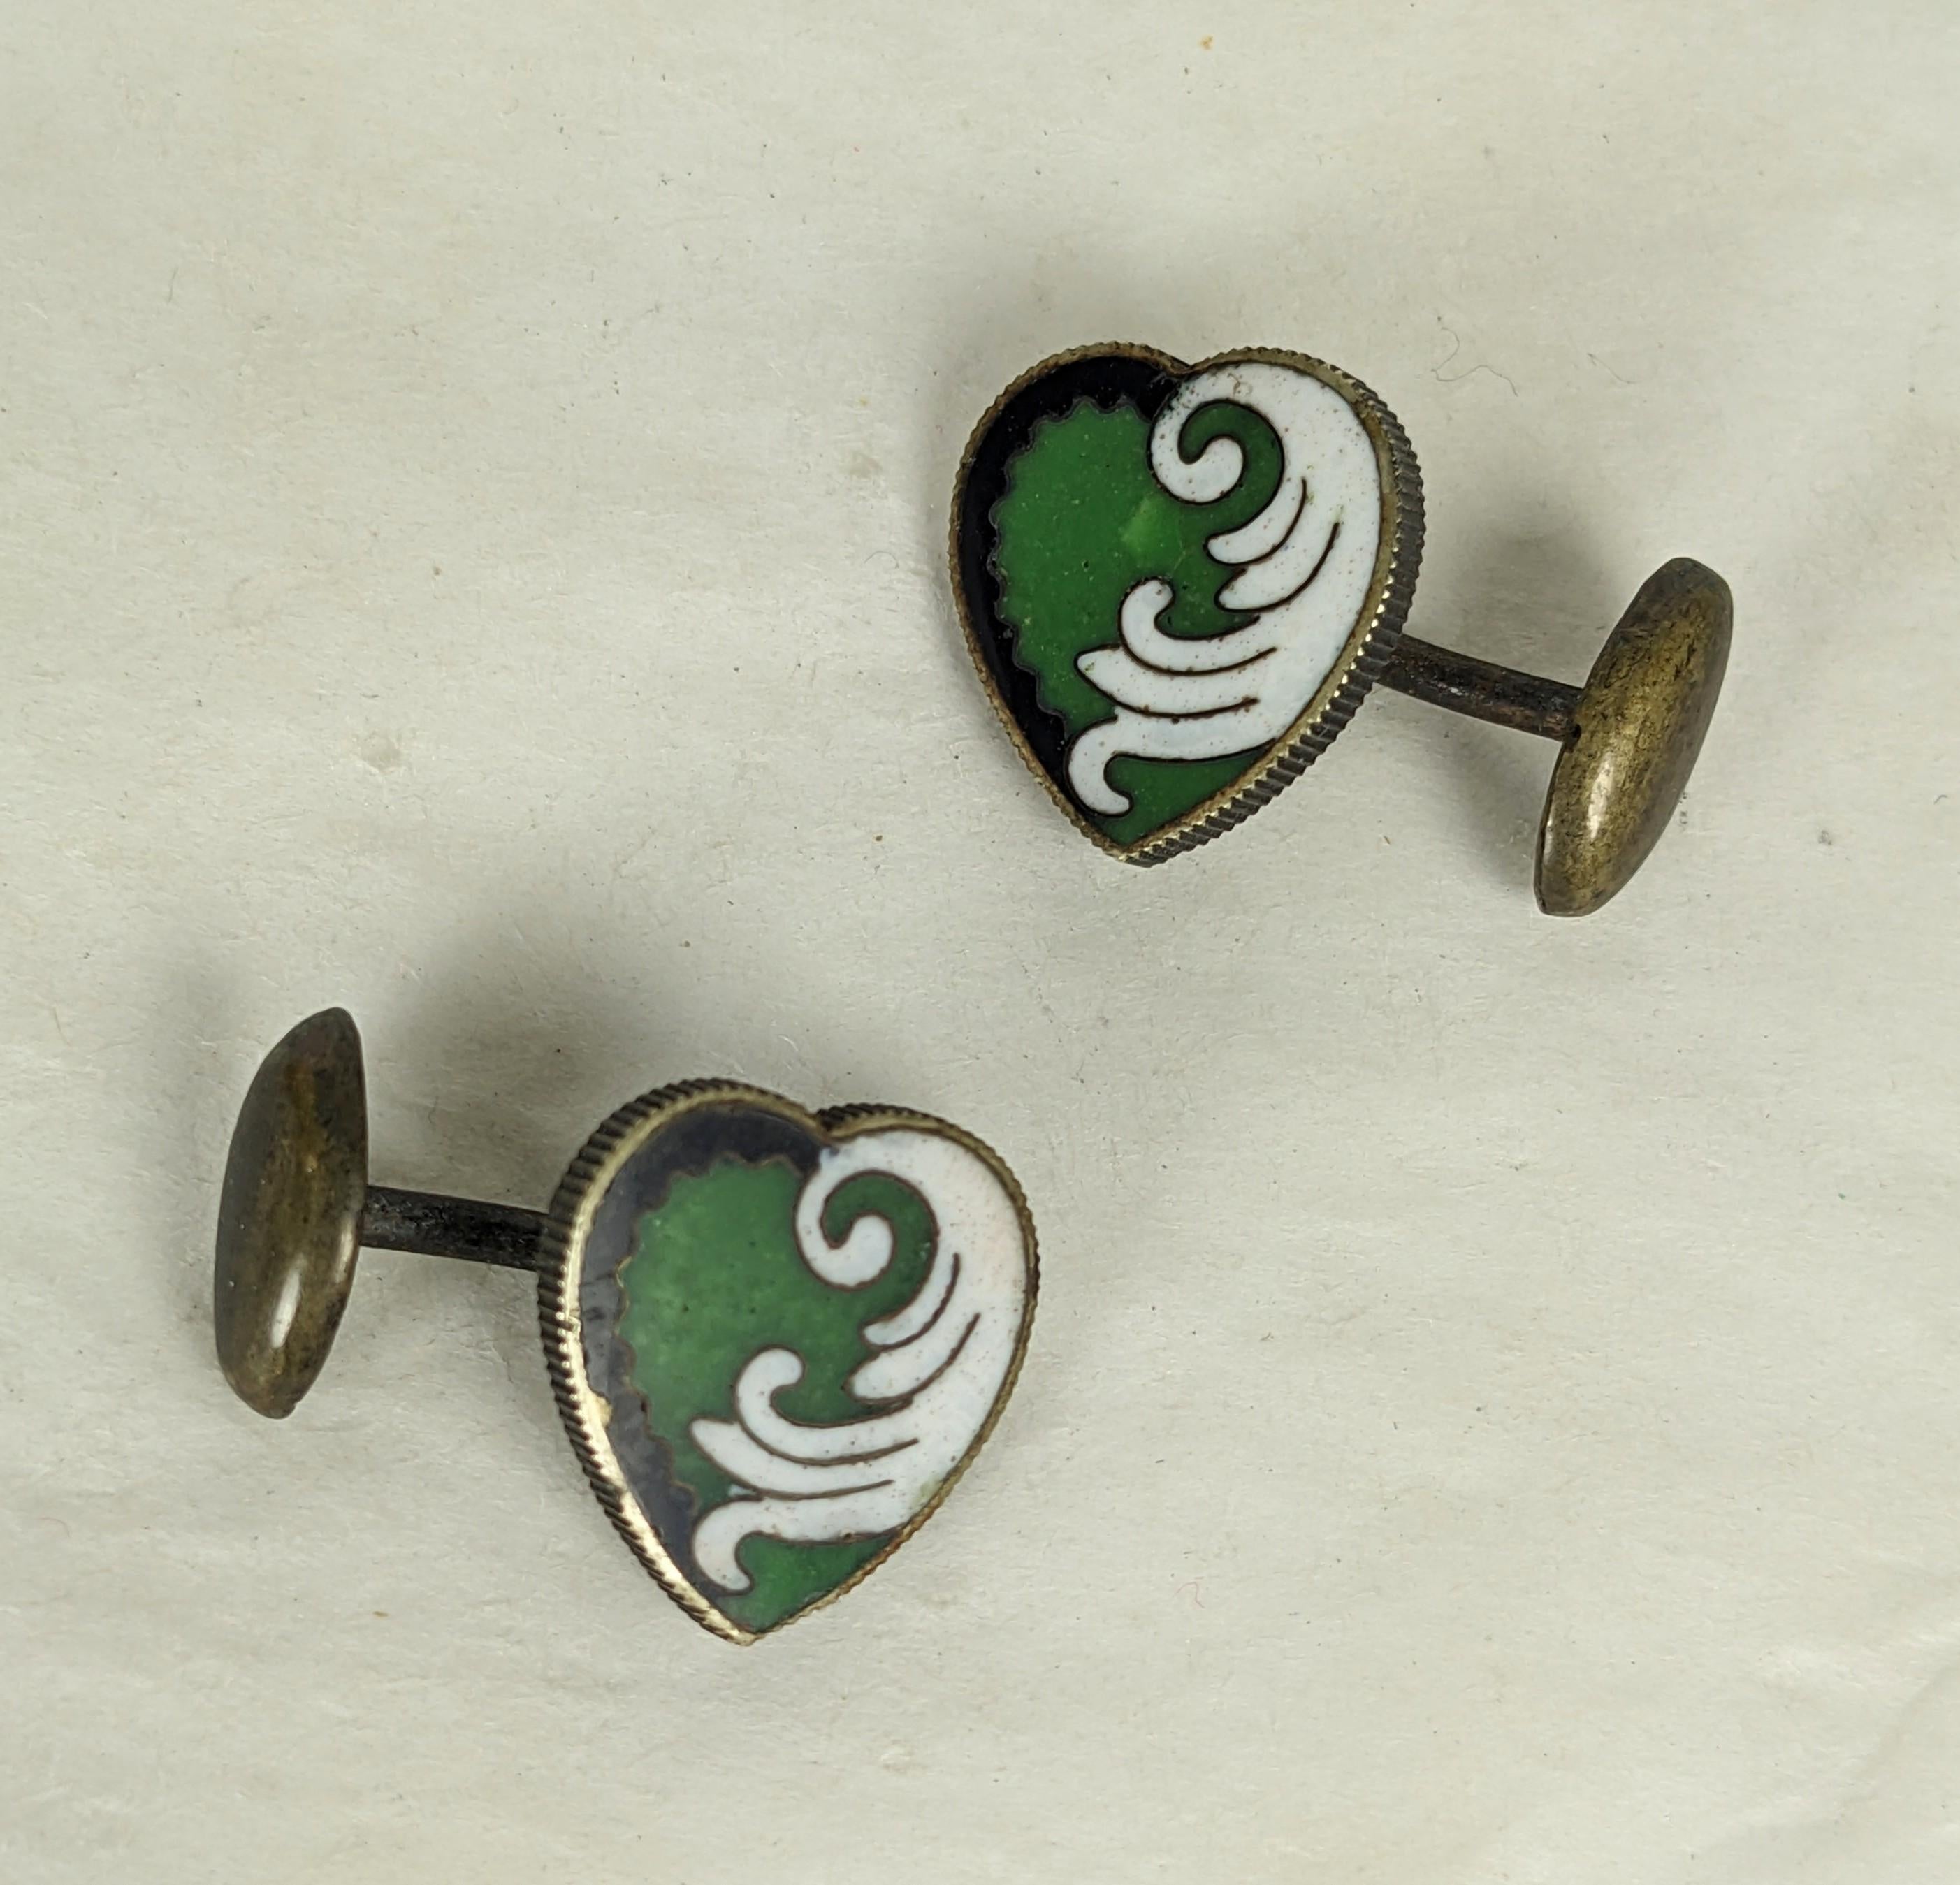 Insolites boutons de manchette victoriens en émail de la fin du XIXe siècle, avec des émaux verts, blancs et noirs de style Art nouveau sur un motif en forme de cœur. 
Le cœur mesure 0,5